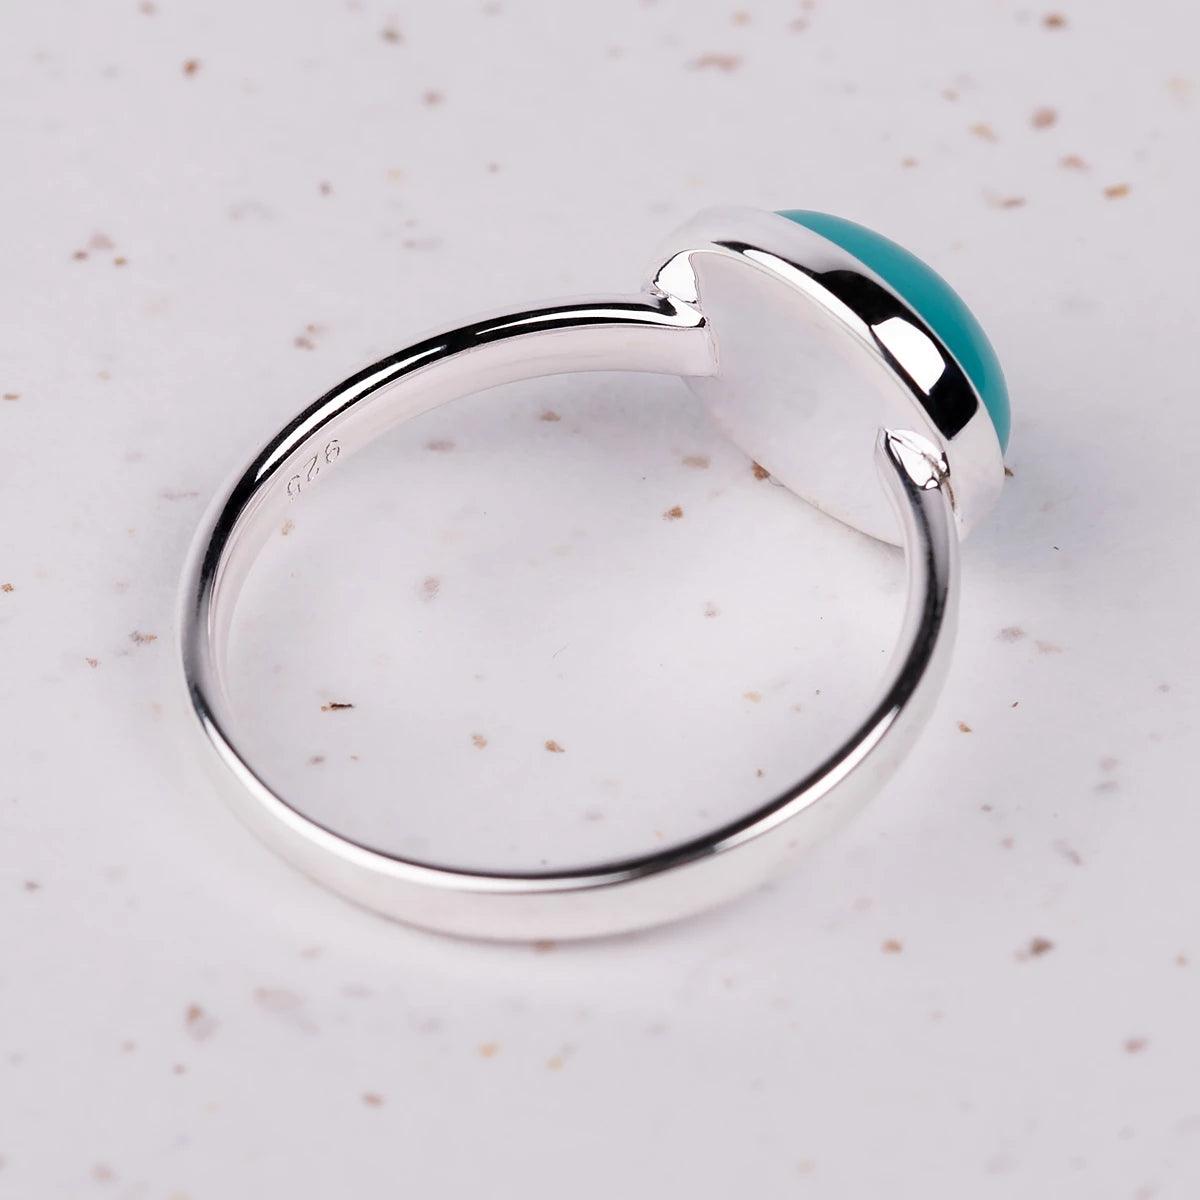 Jane Austen's Silver Replica Ring